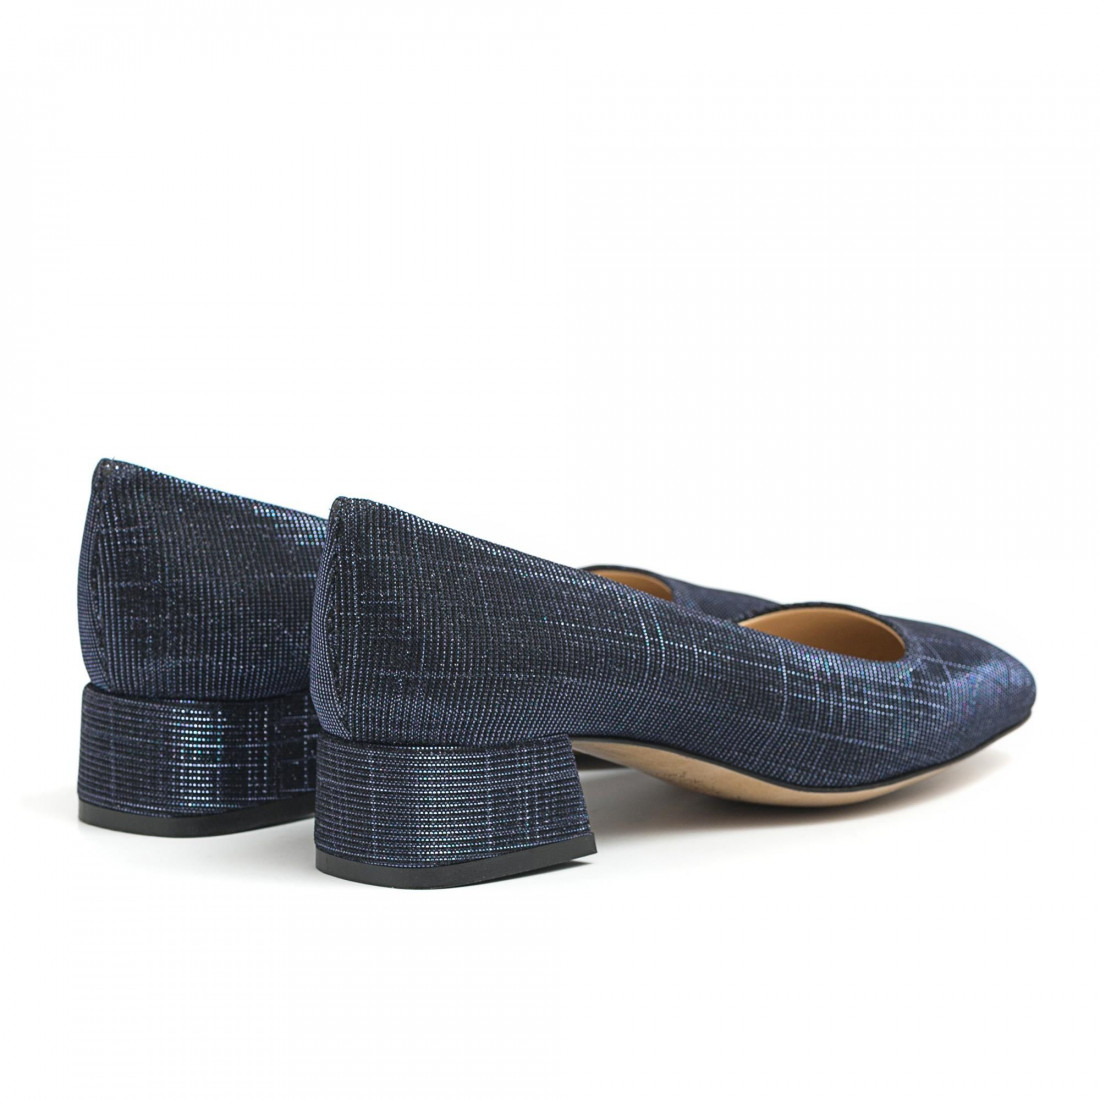 Schuhe mit rundem Absatz und niedrigem Absatz aus blauem Stoff